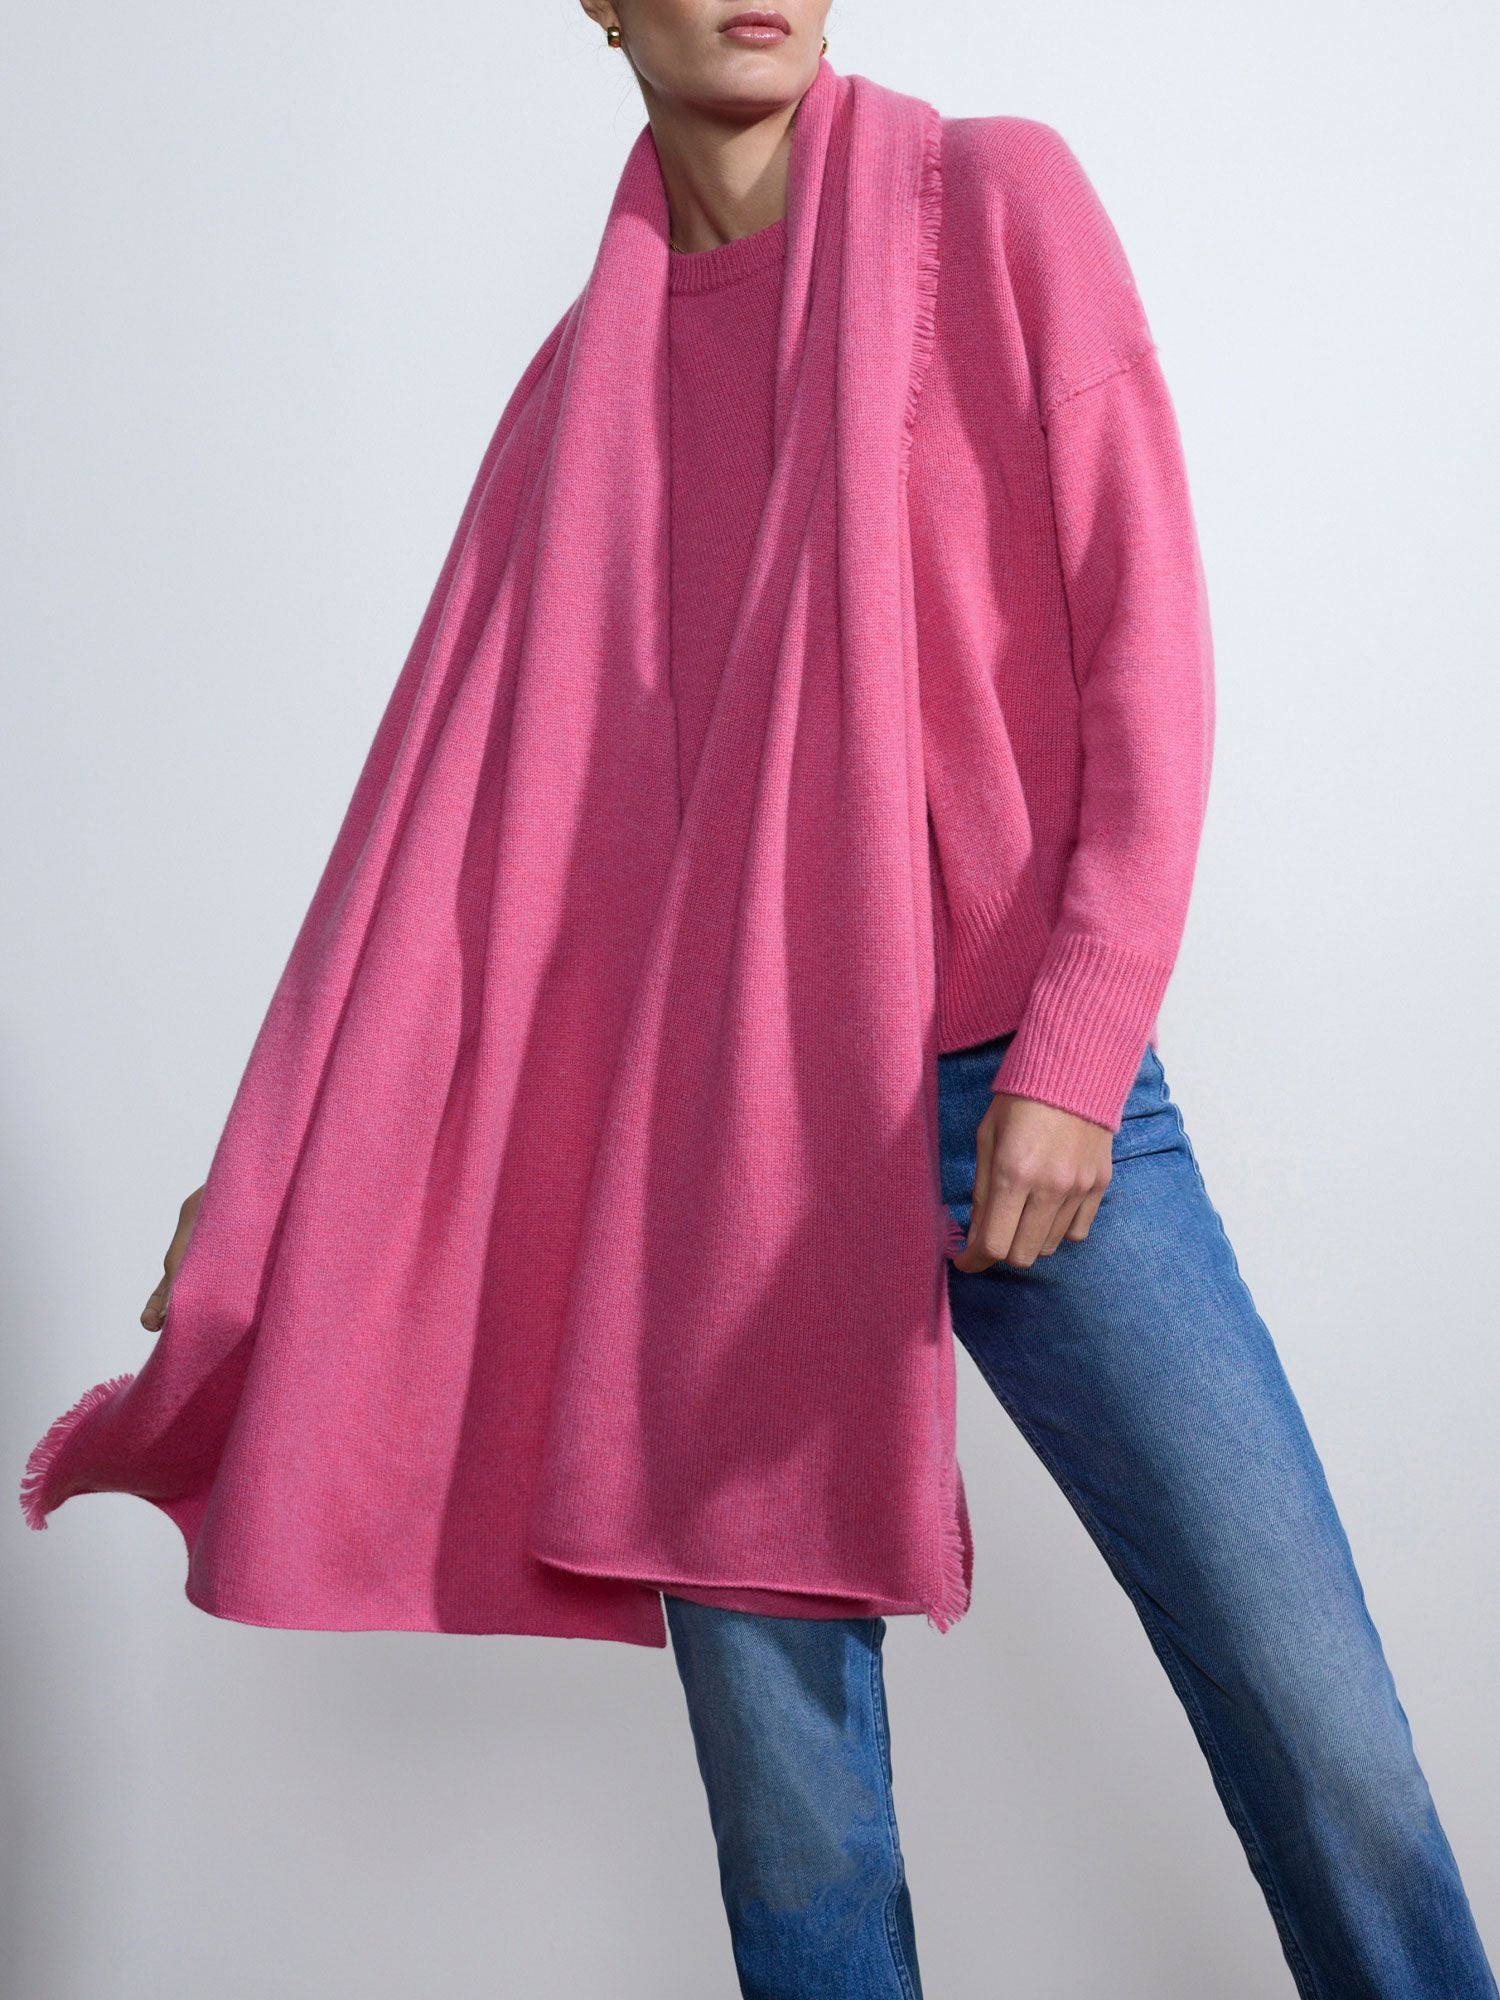 Cashmere fringe pink wrap on model